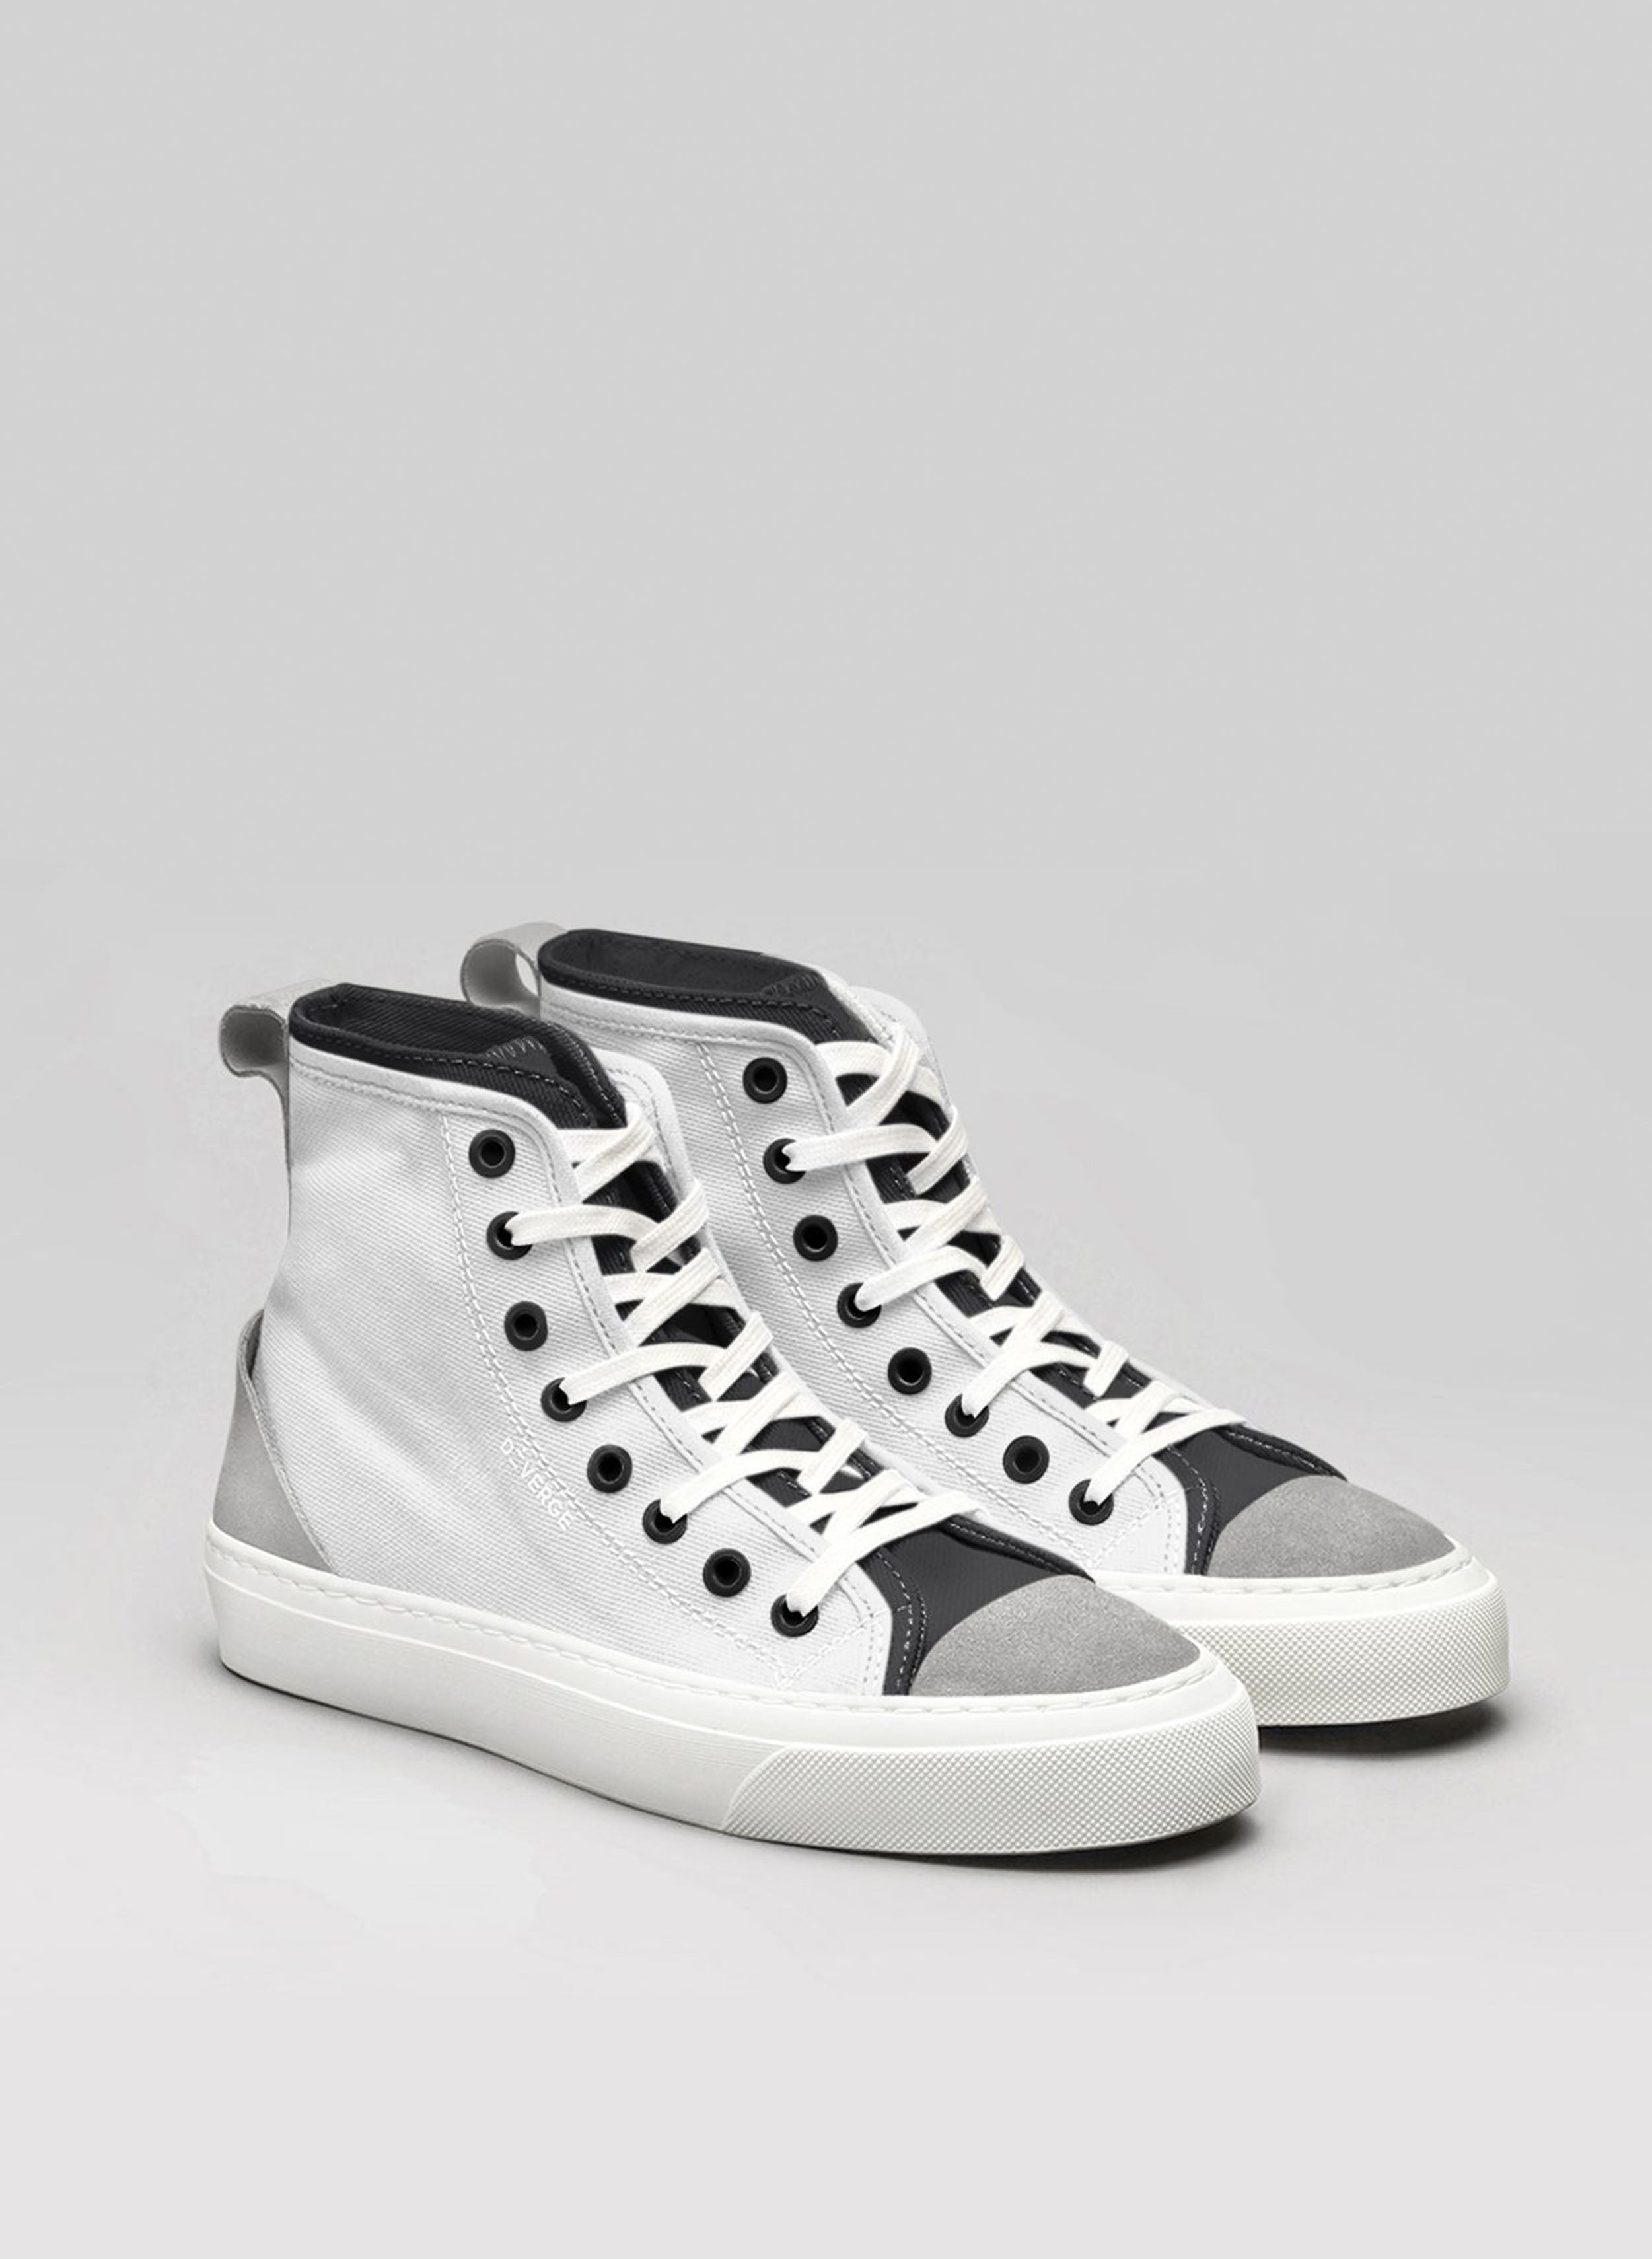 Un paio di scarpe high-top personalizzate bianche e nere sneakers di Diverge.